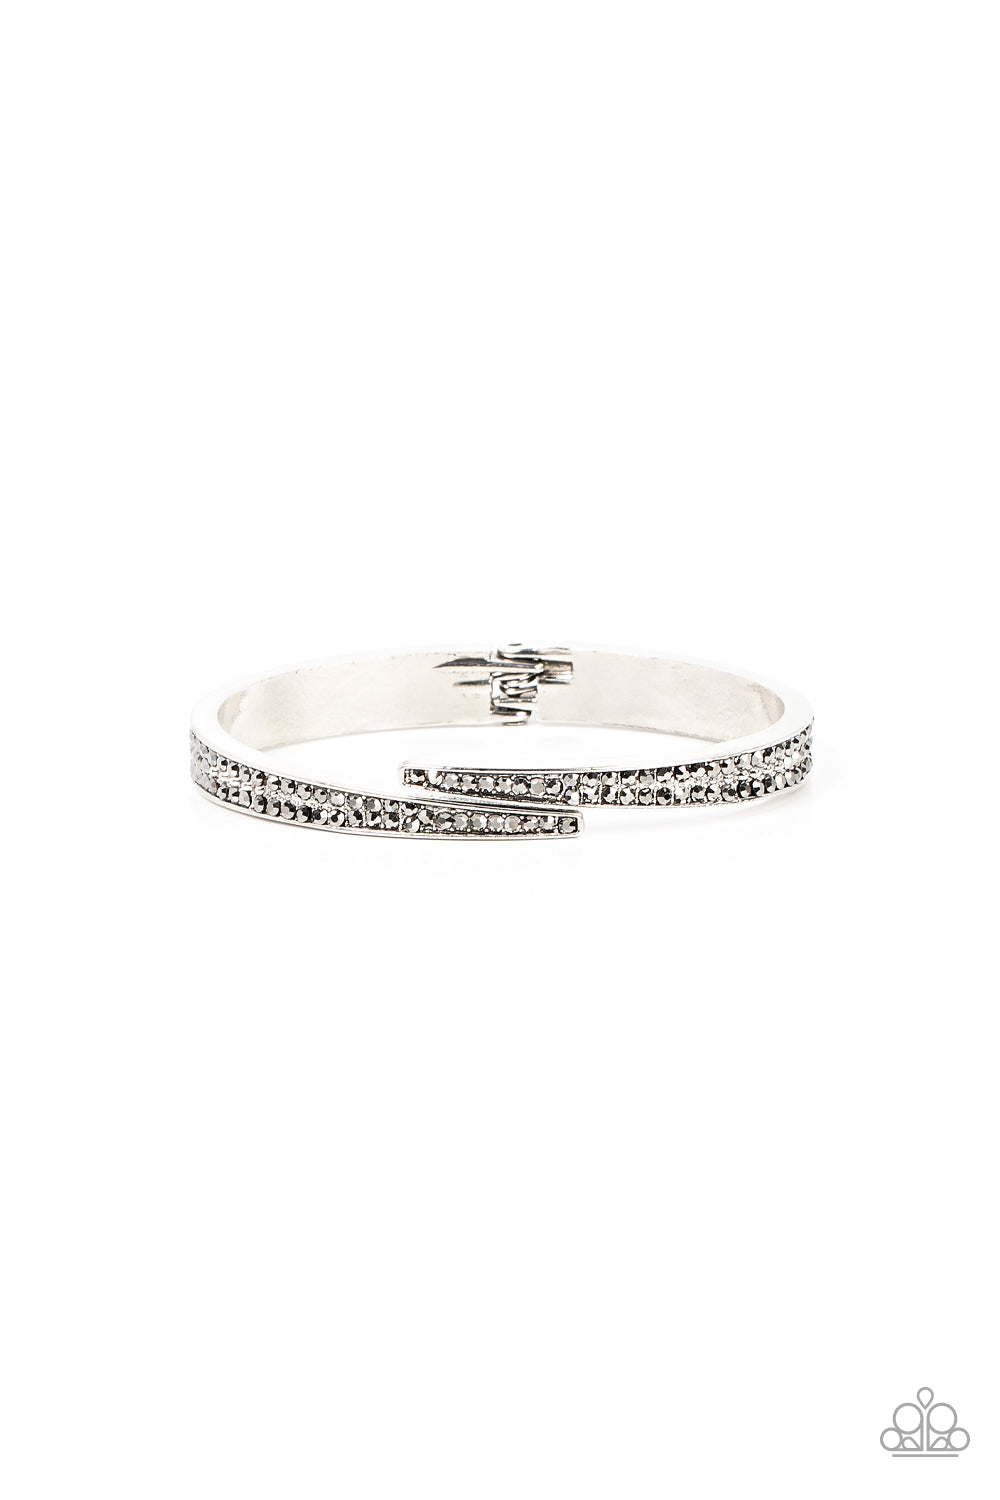 five-dollar-jewelry-deco-drama-silver-bracelet-paparazzi-accessories